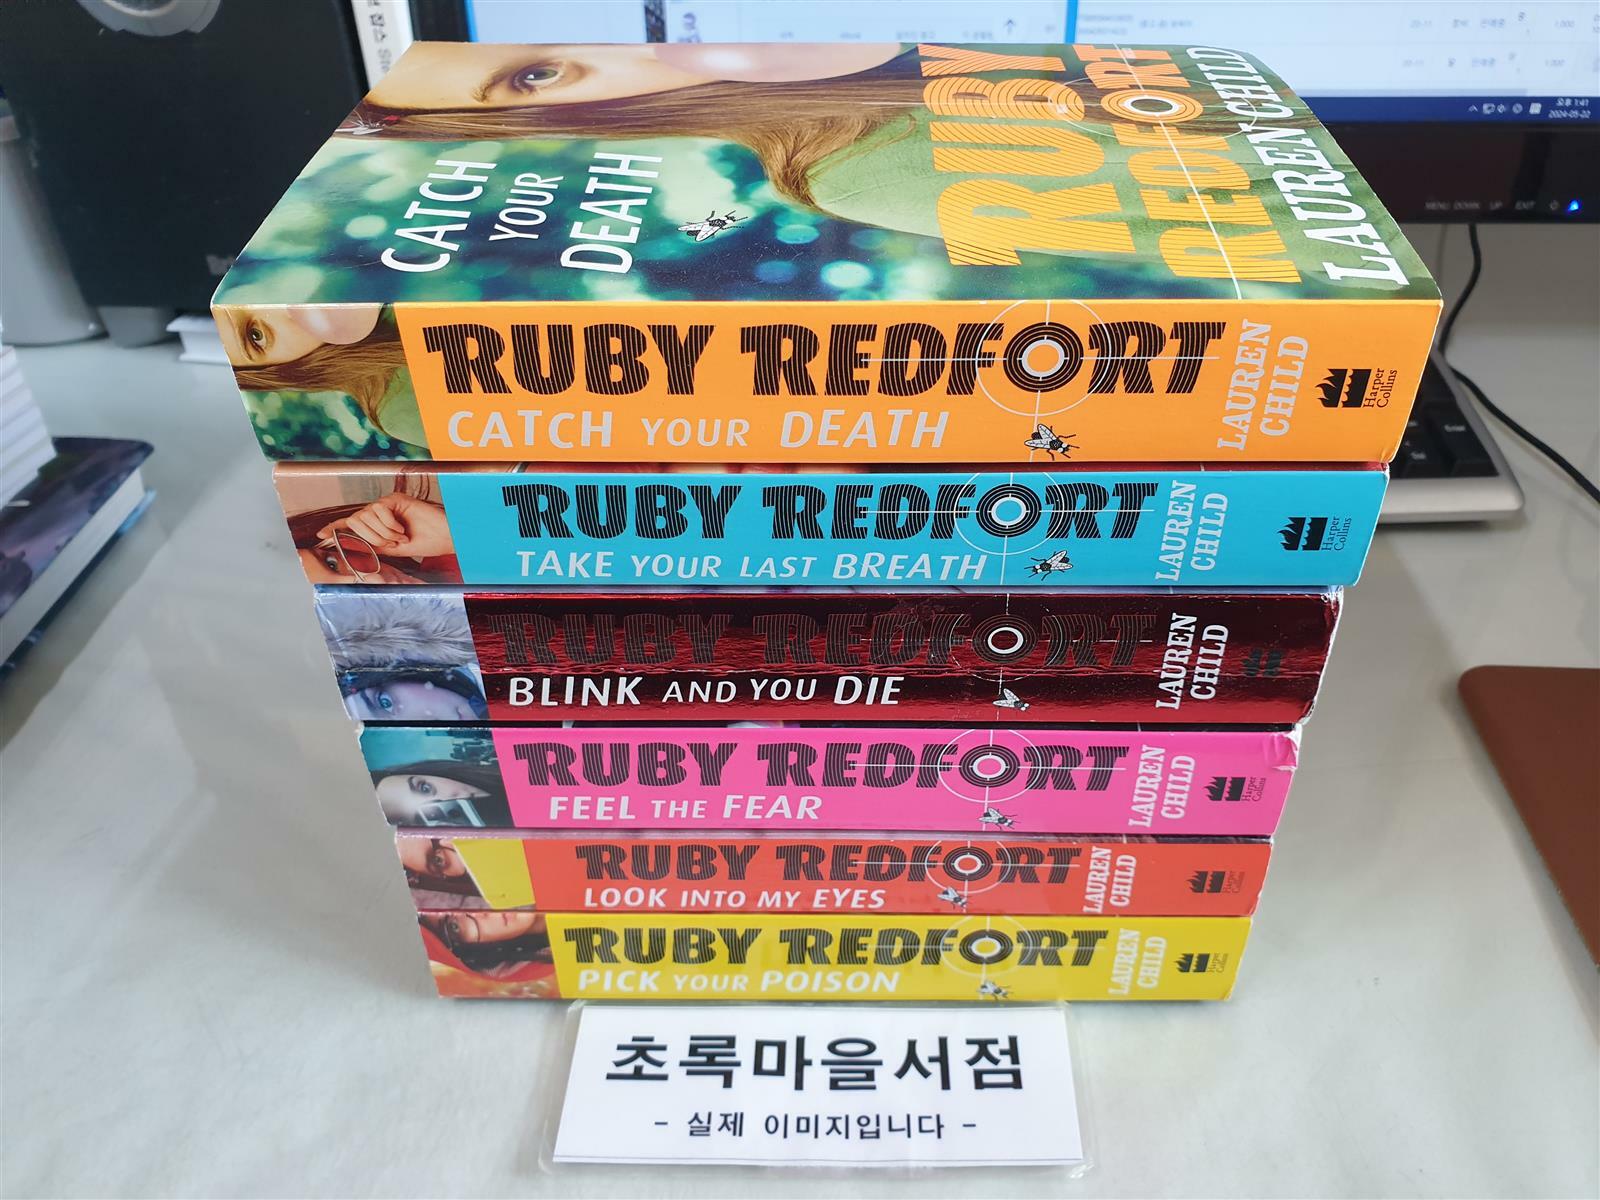 [중고] RUBY REDFORT COIIECTON SET:전6권/Paperback/사진2컷참조/초록마을서점